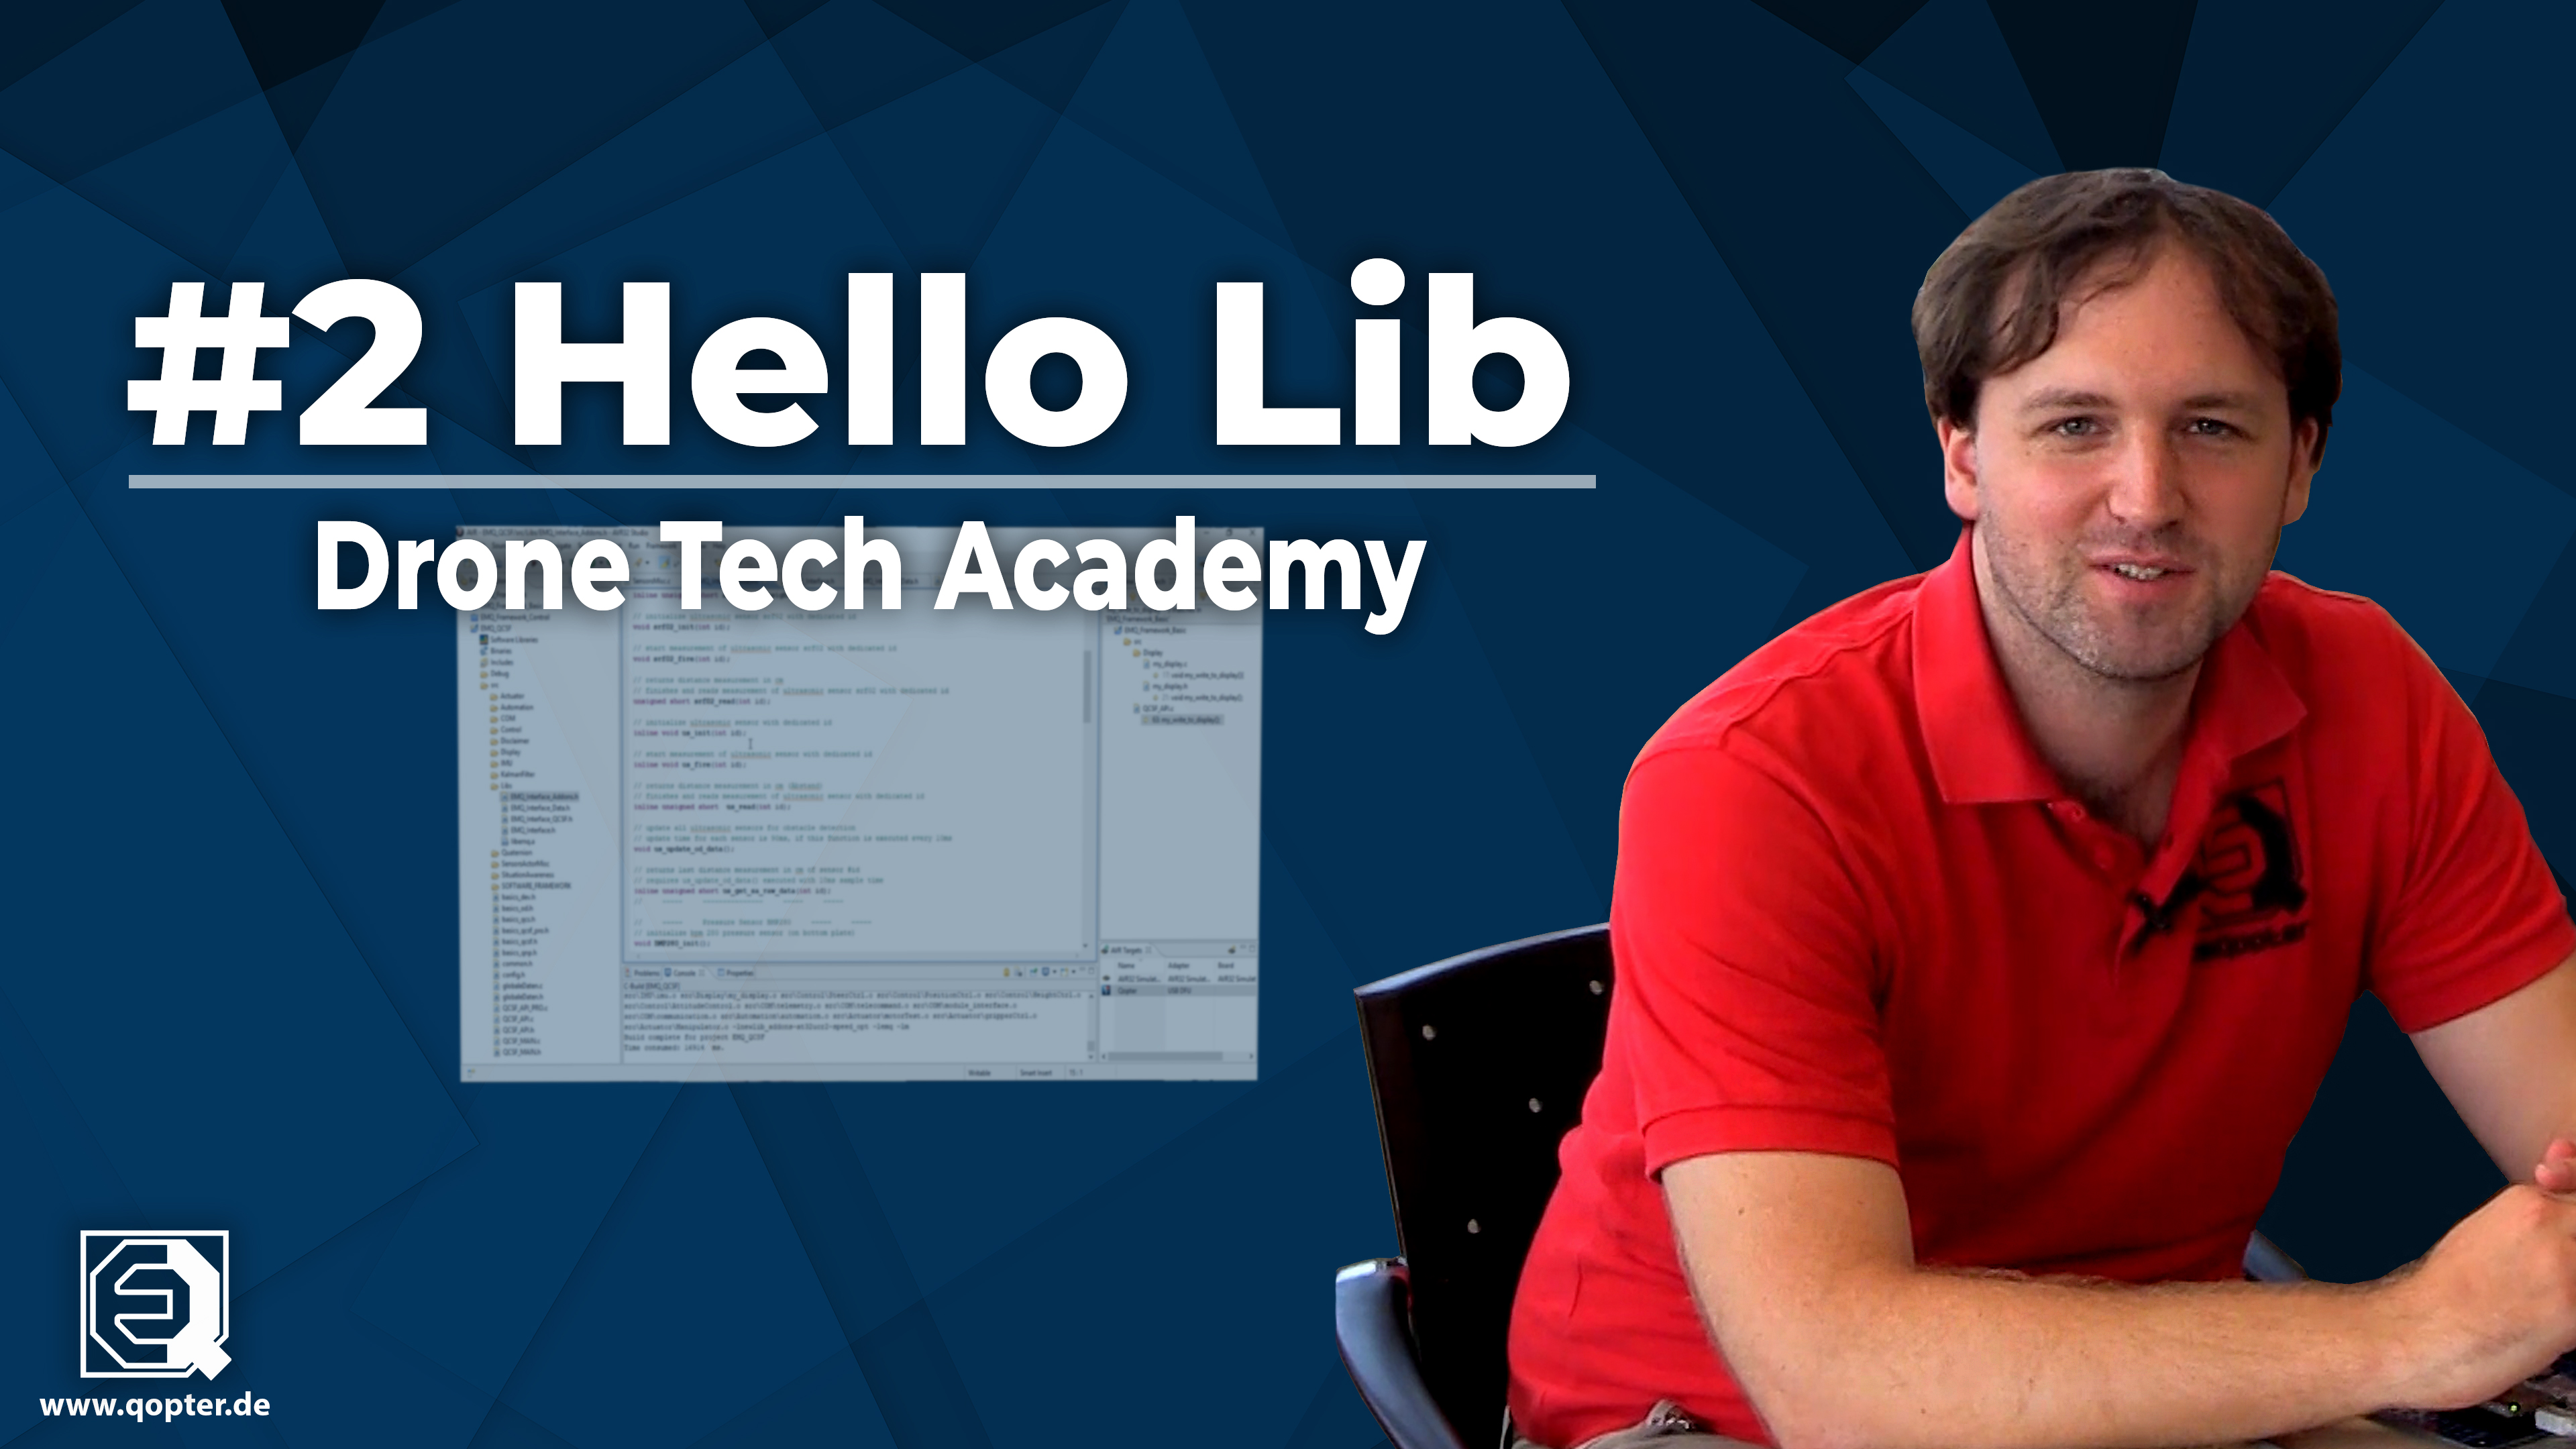 Drone Tech Academy: # 2 Hello Lib